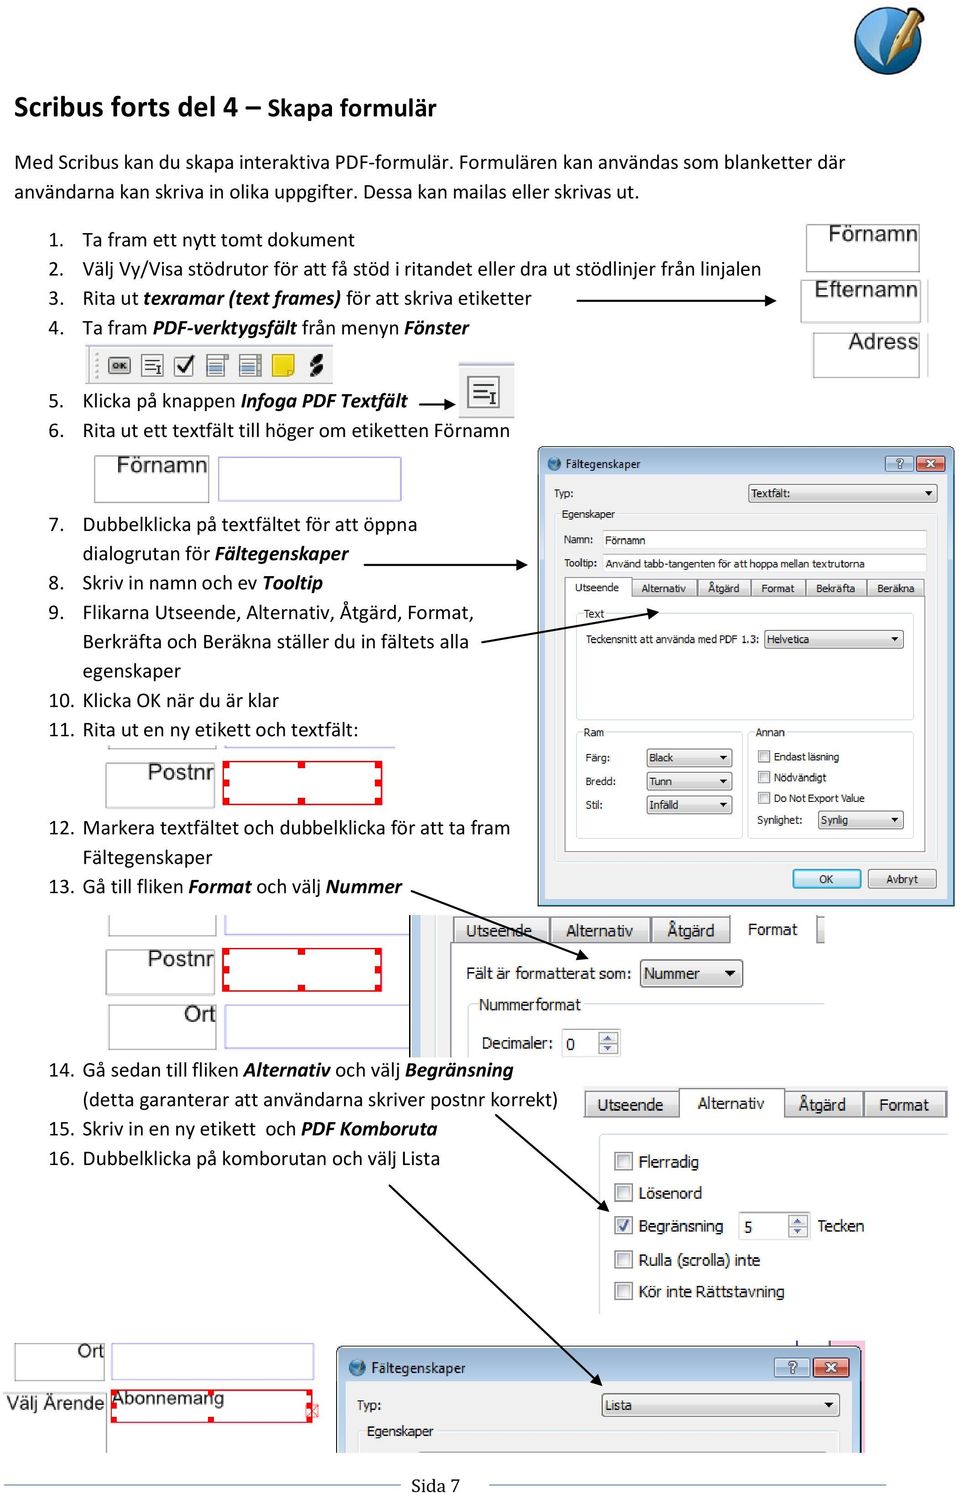 Rita ut texramar (text frames) för att skriva etiketter 4. Ta fram PDF-verktygsfält från menyn Fönster 5. Klicka på knappen Infoga PDF Textfält 6.